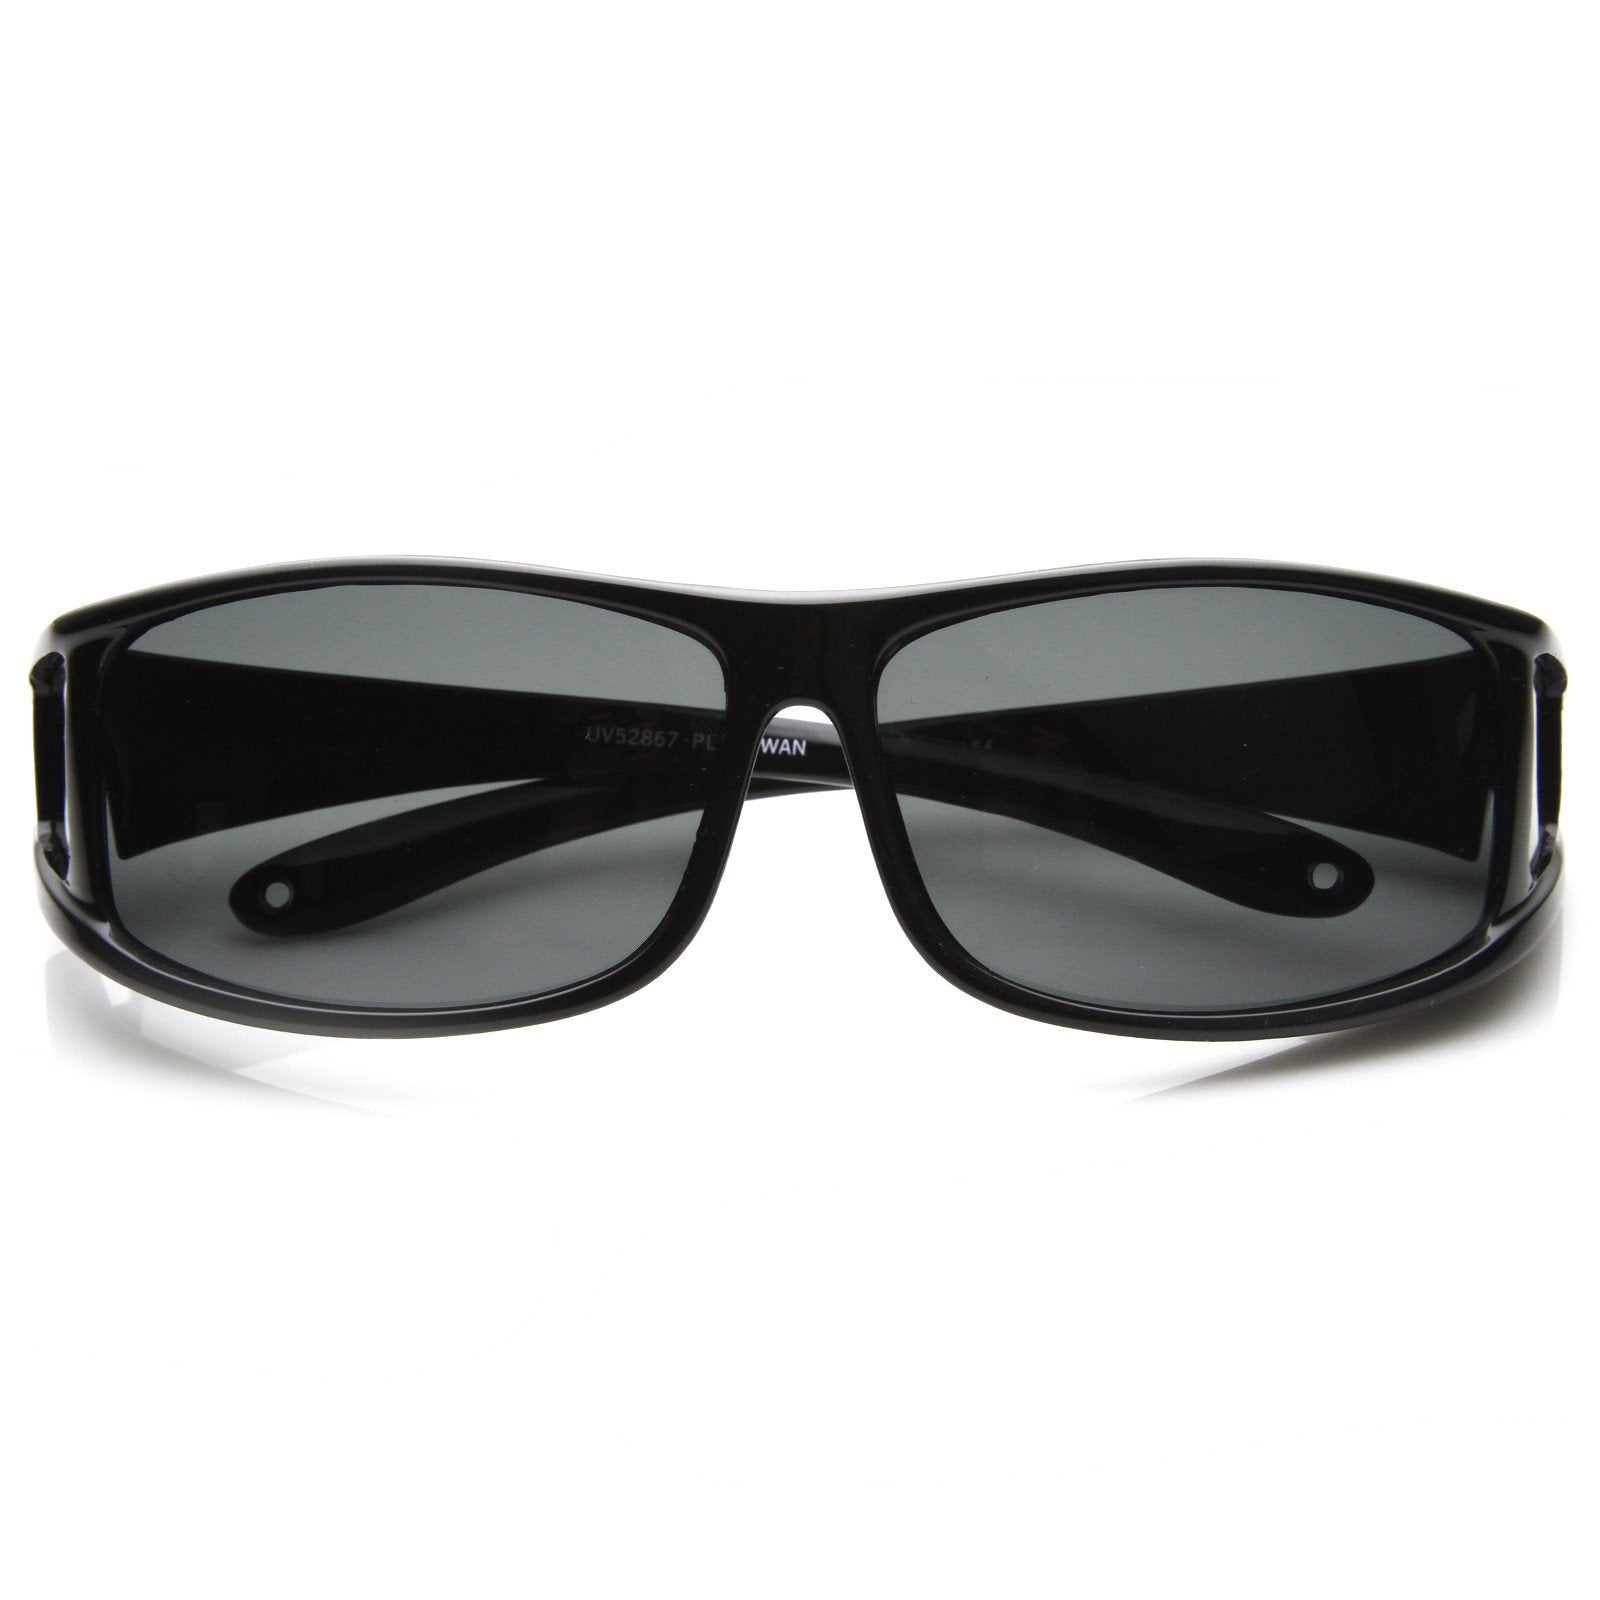 Gafas de sol con lentes polarizadas y protección envolvente completa 8880